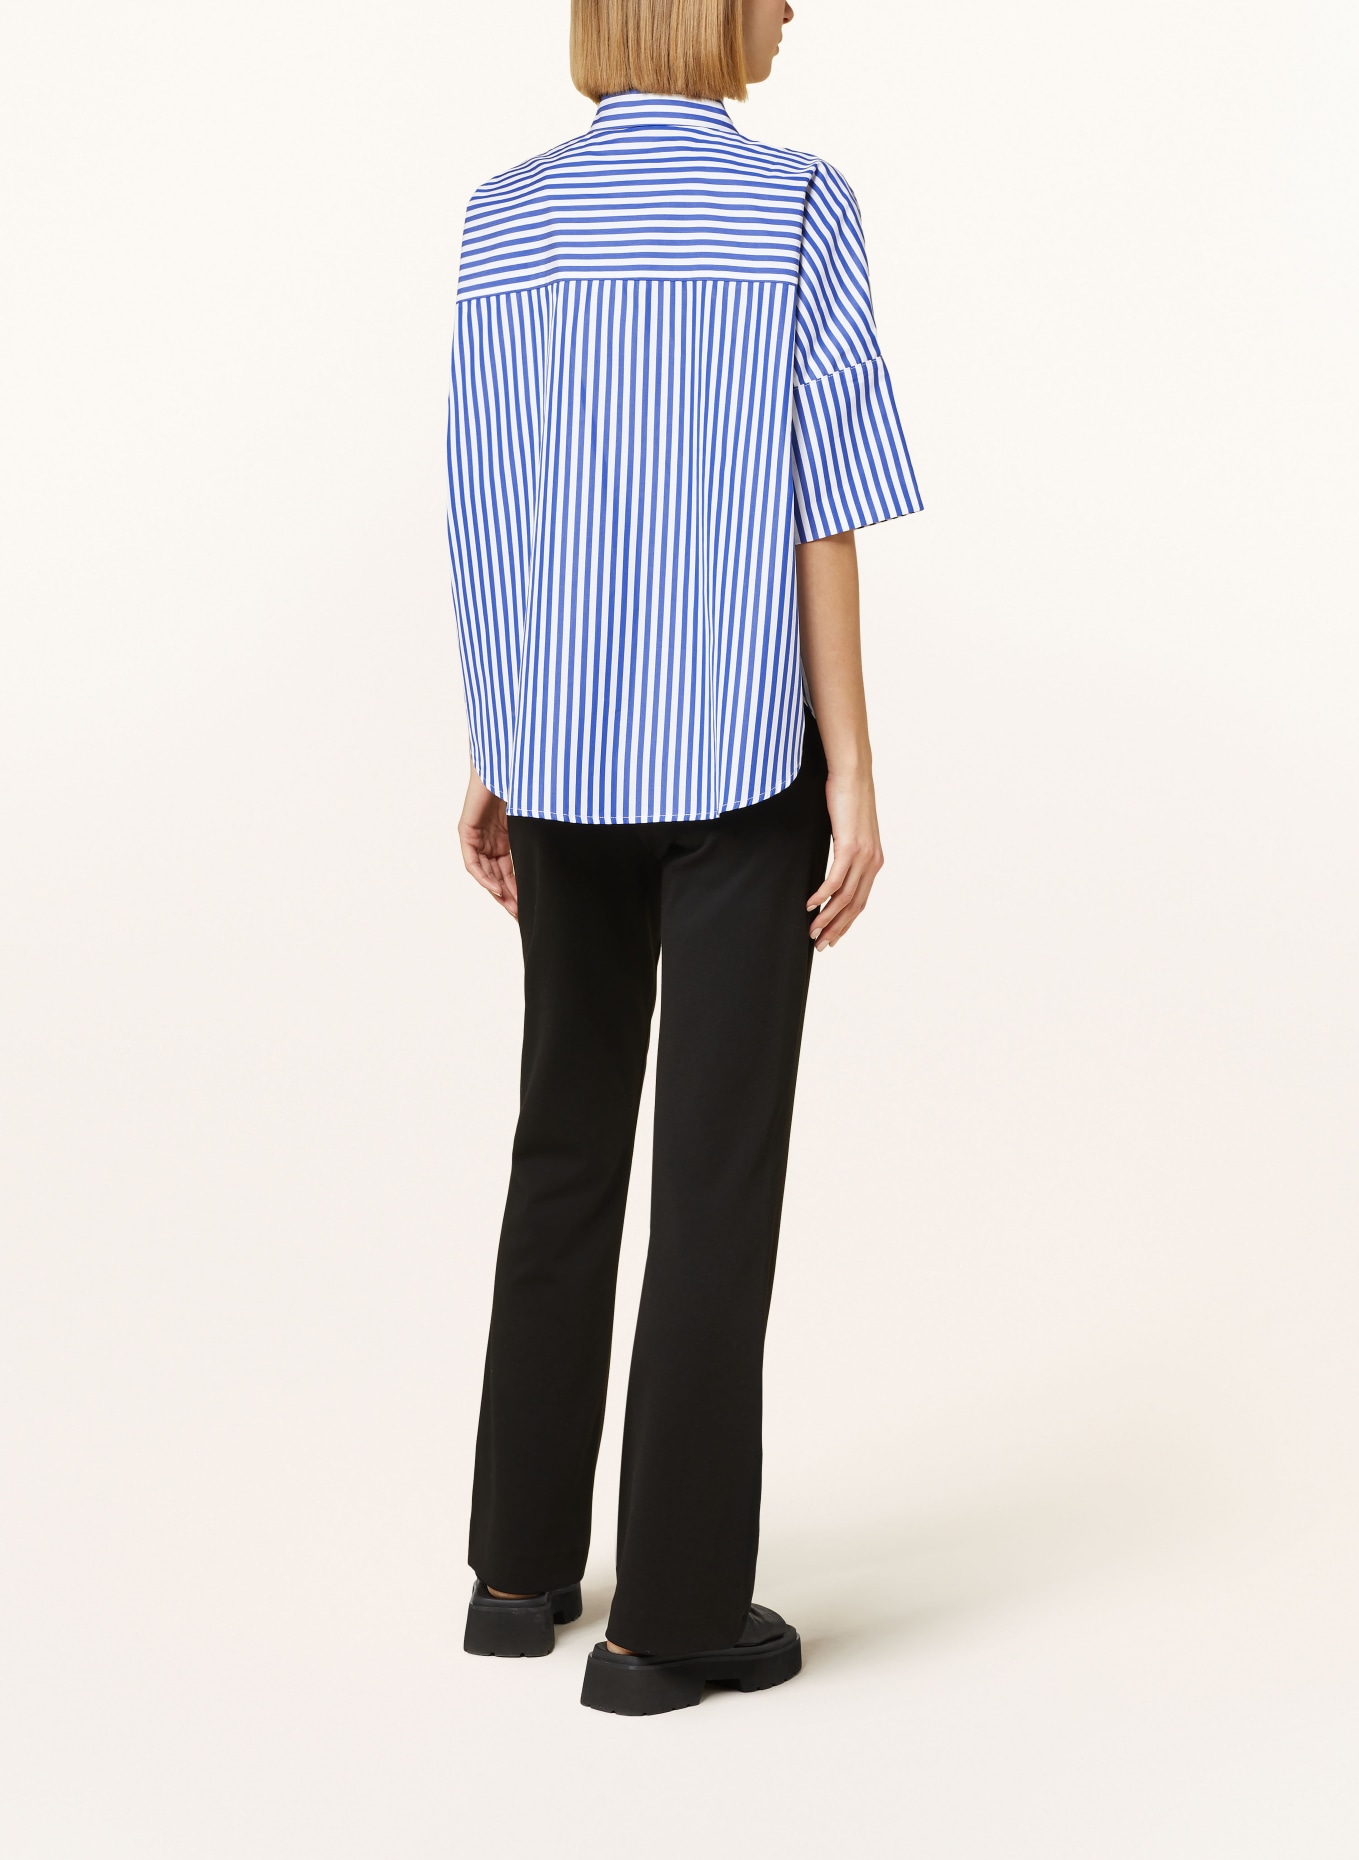 TONNO & PANNA Shirt blouse, Color: WHITE/ BLUE (Image 3)